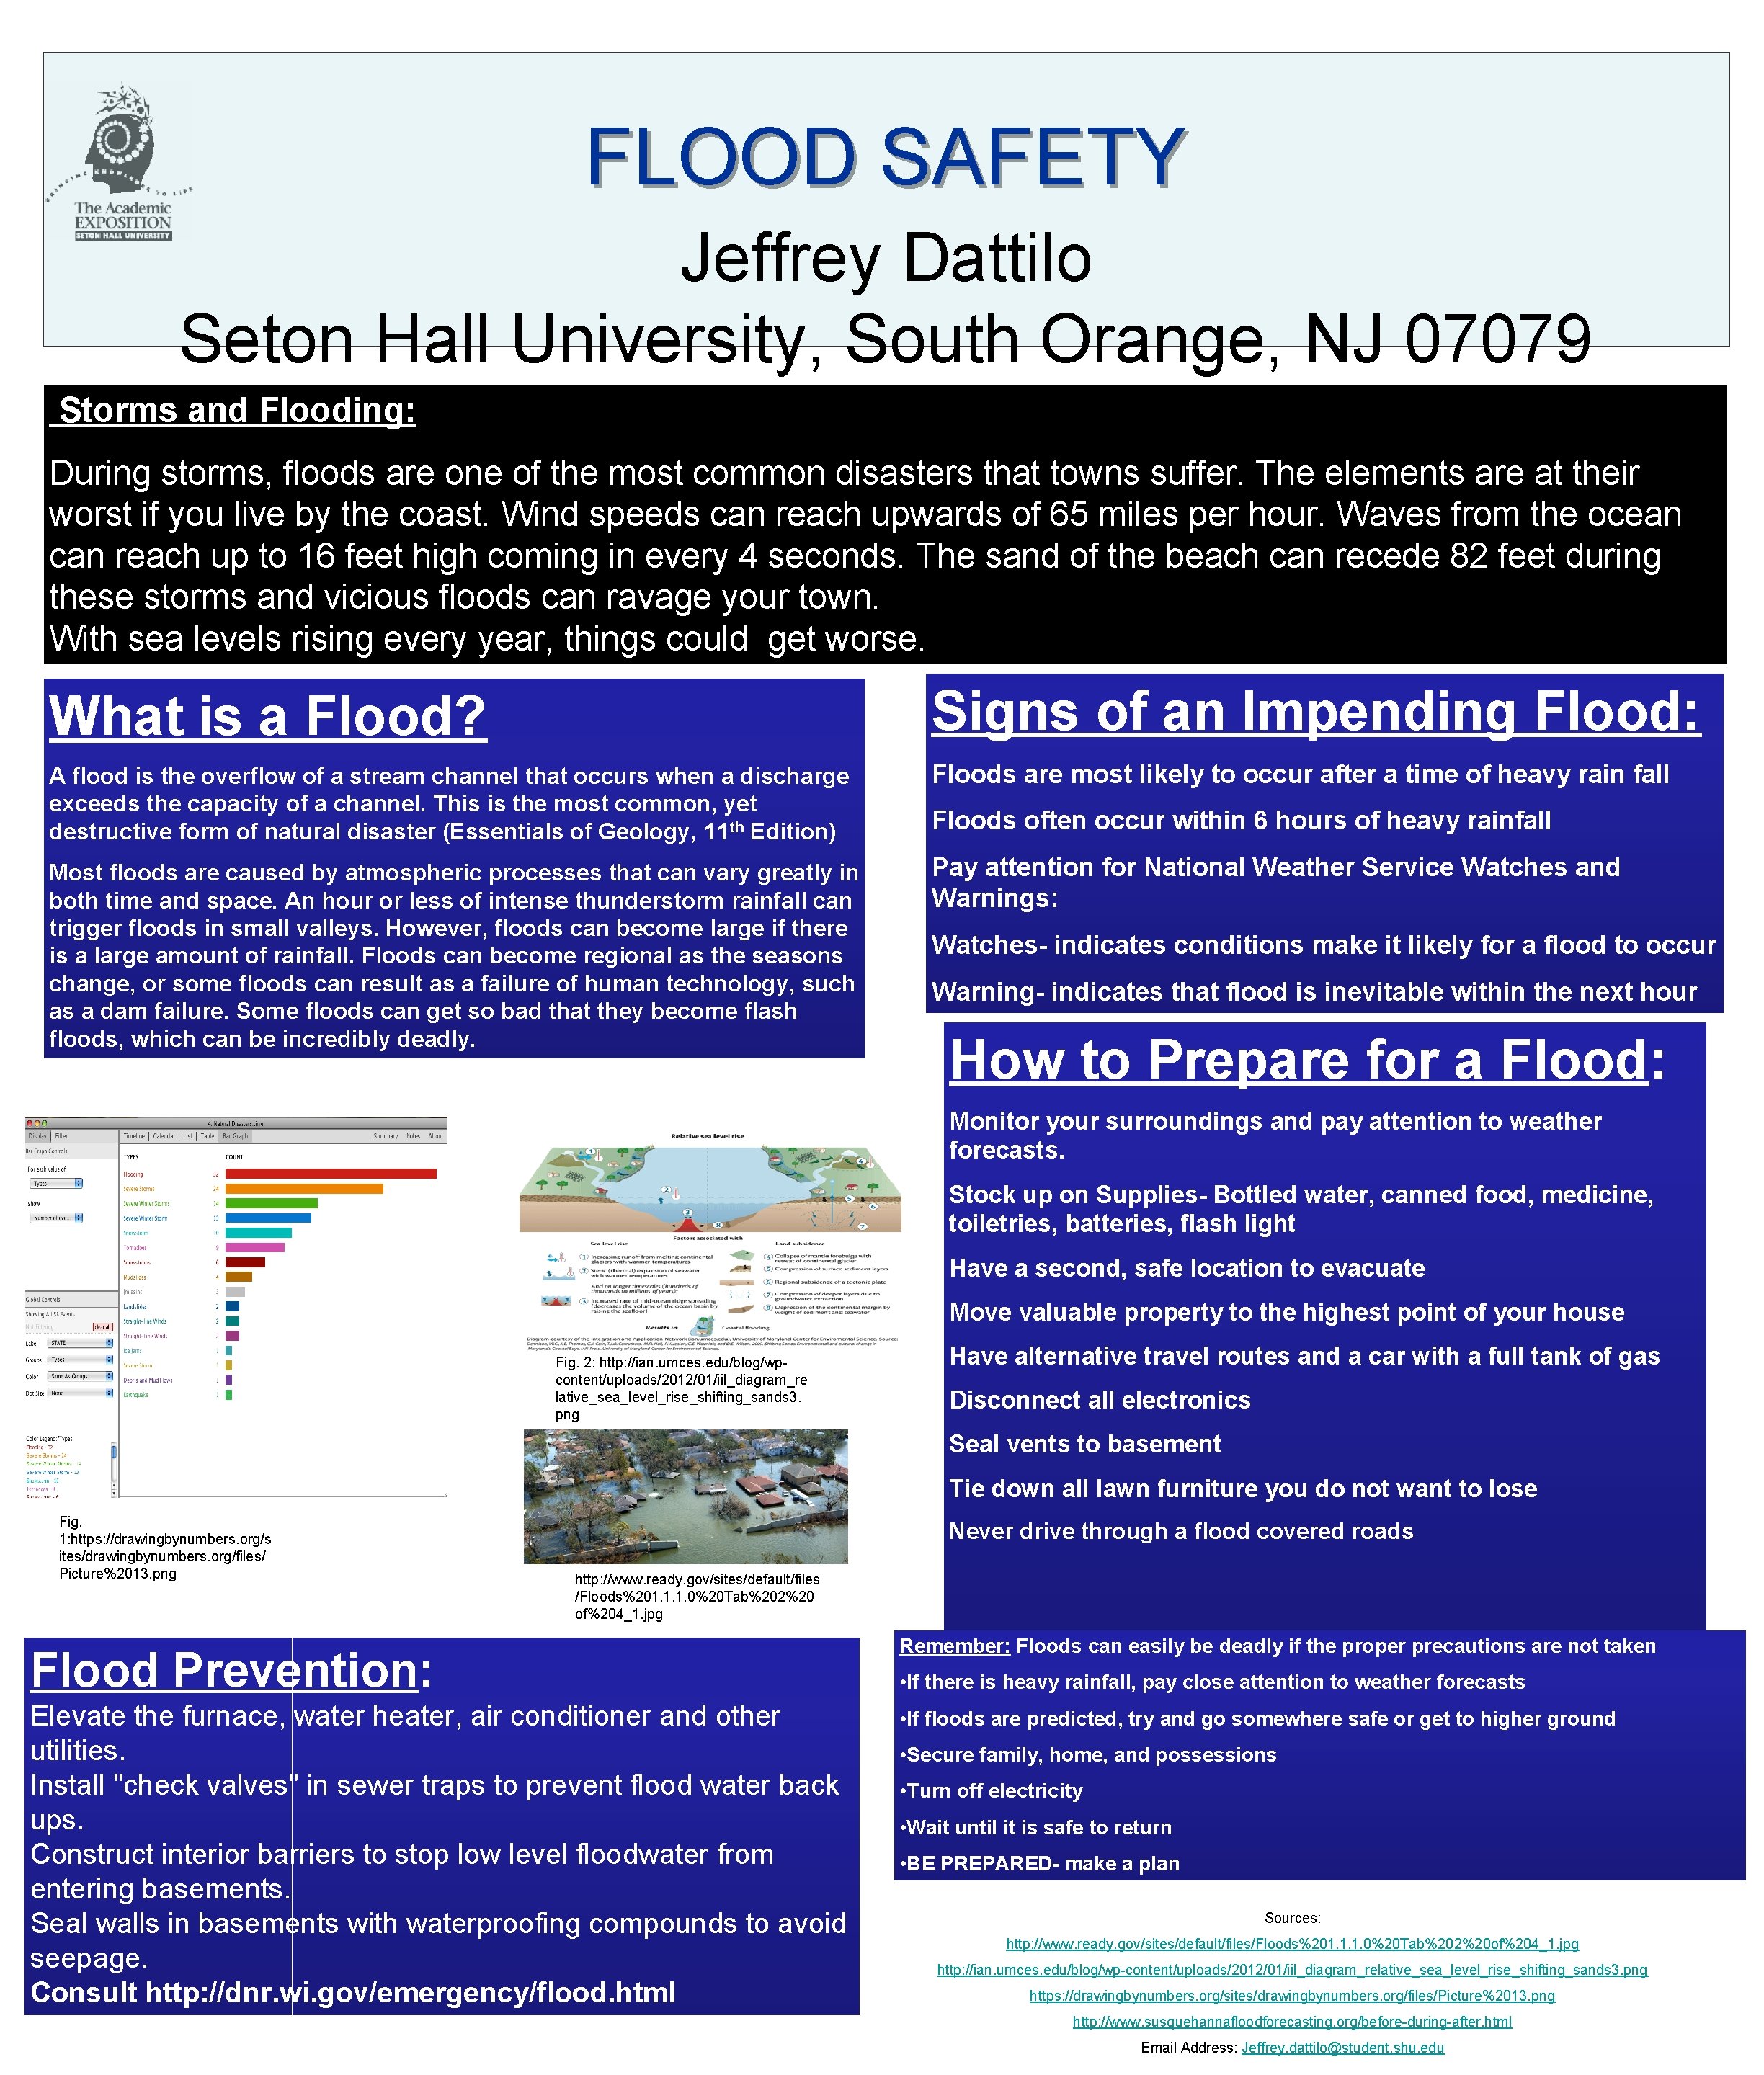 FLOOD SAFETY Jeffrey Dattilo Seton Hall University, South Orange, NJ 07079 Storms and Flooding: